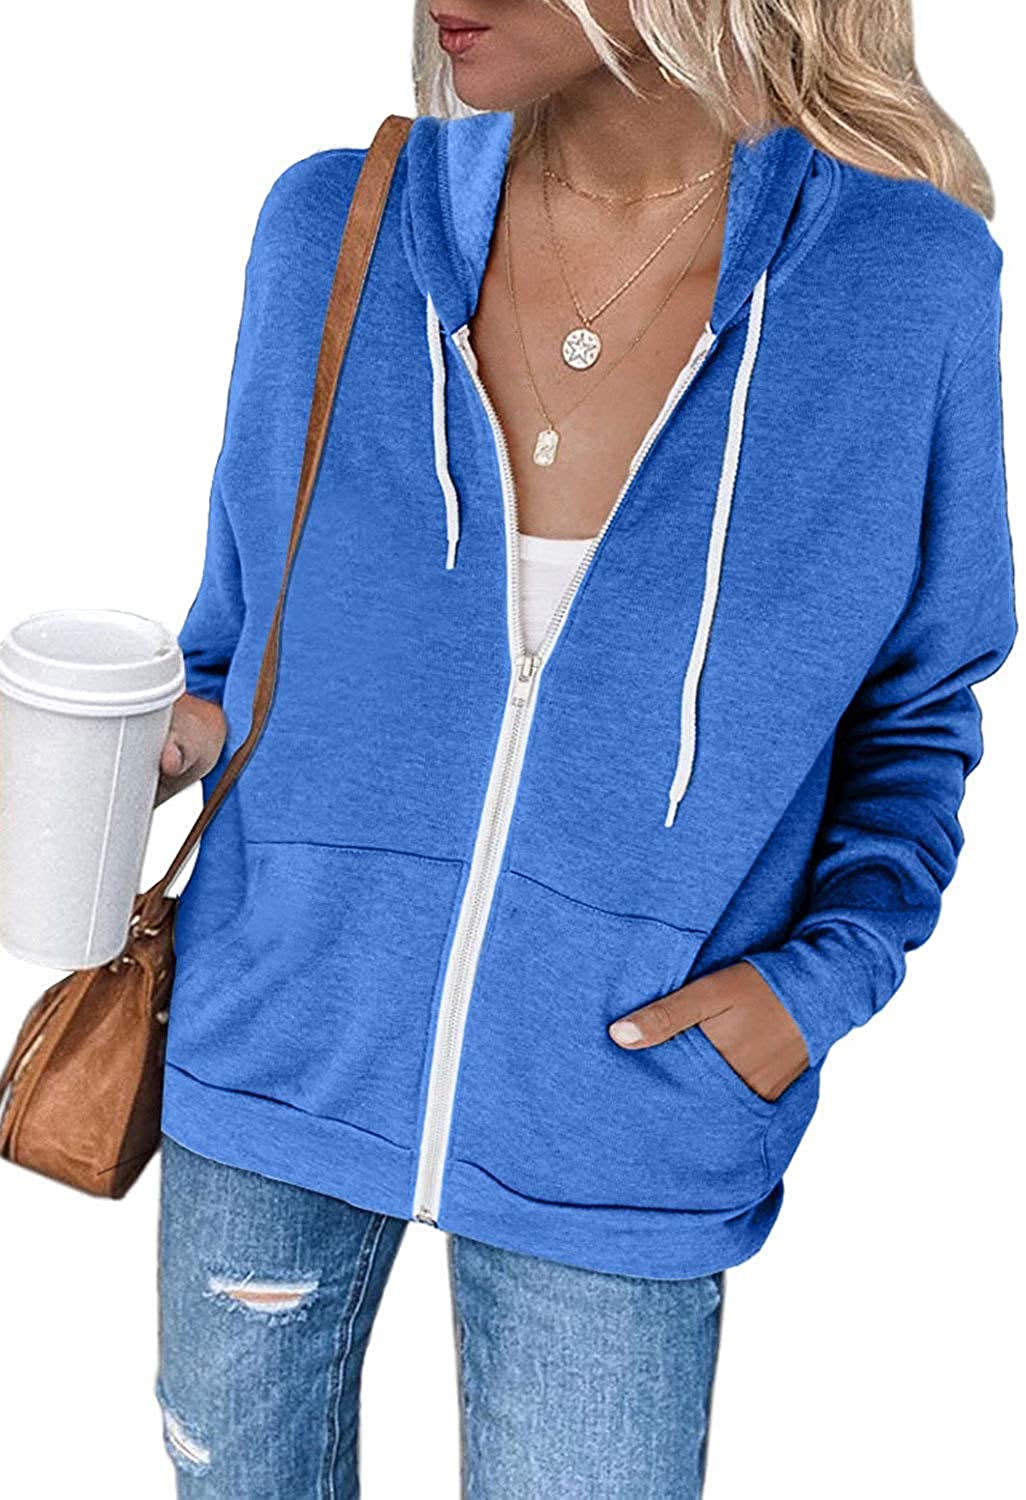 Uusollecy Women's Casual Zip Up Hoodie Lightweight Sweatshirt